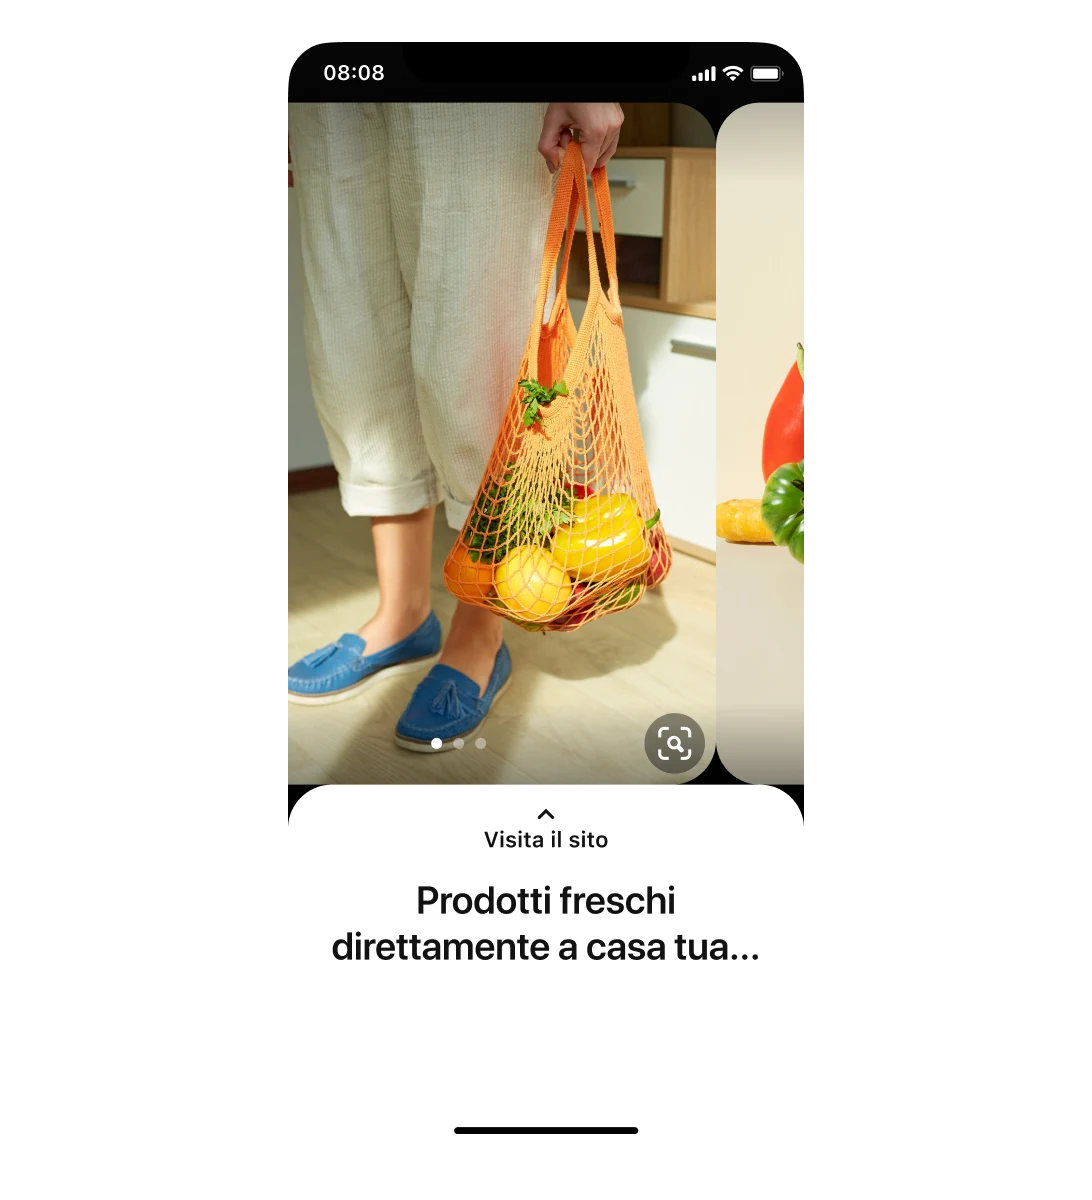 Visualizzazione mobile di un Pin carosello relativo a un supermercato. La prima foto ritrae una persona con una borsa piena di frutta e verdura. A destra spunta una parte della seconda foto con la didascalia: "Prodotti freschi direttamente a casa tua..."